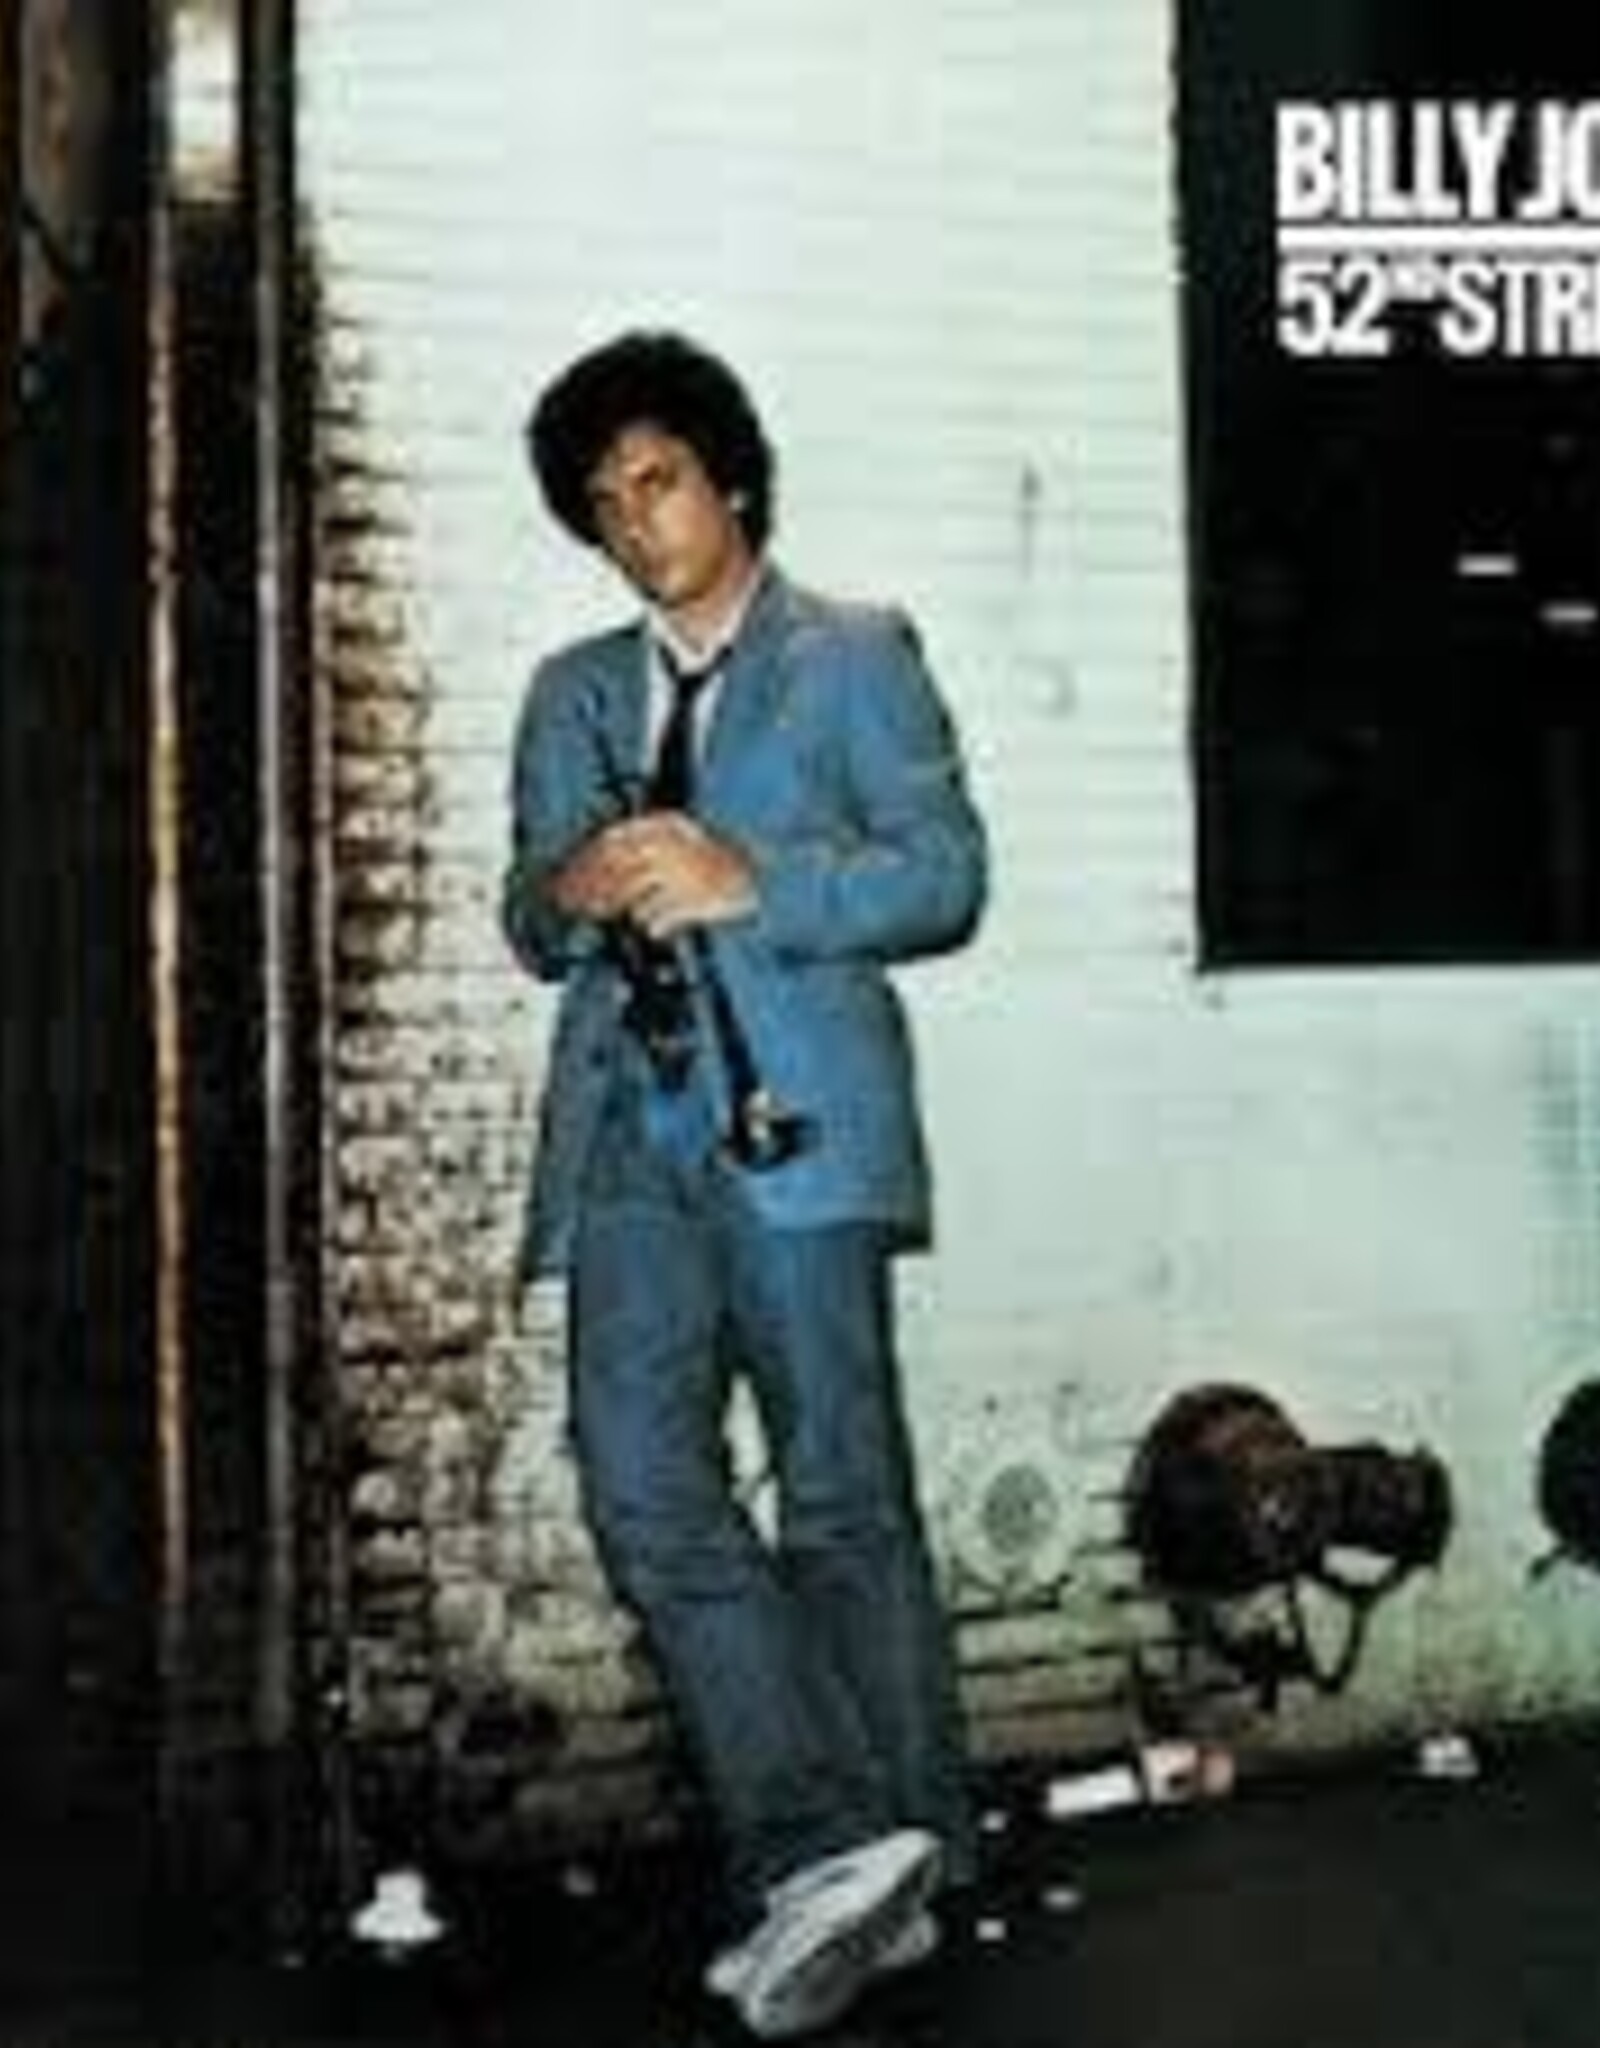 Billy Joel - 52nd Street